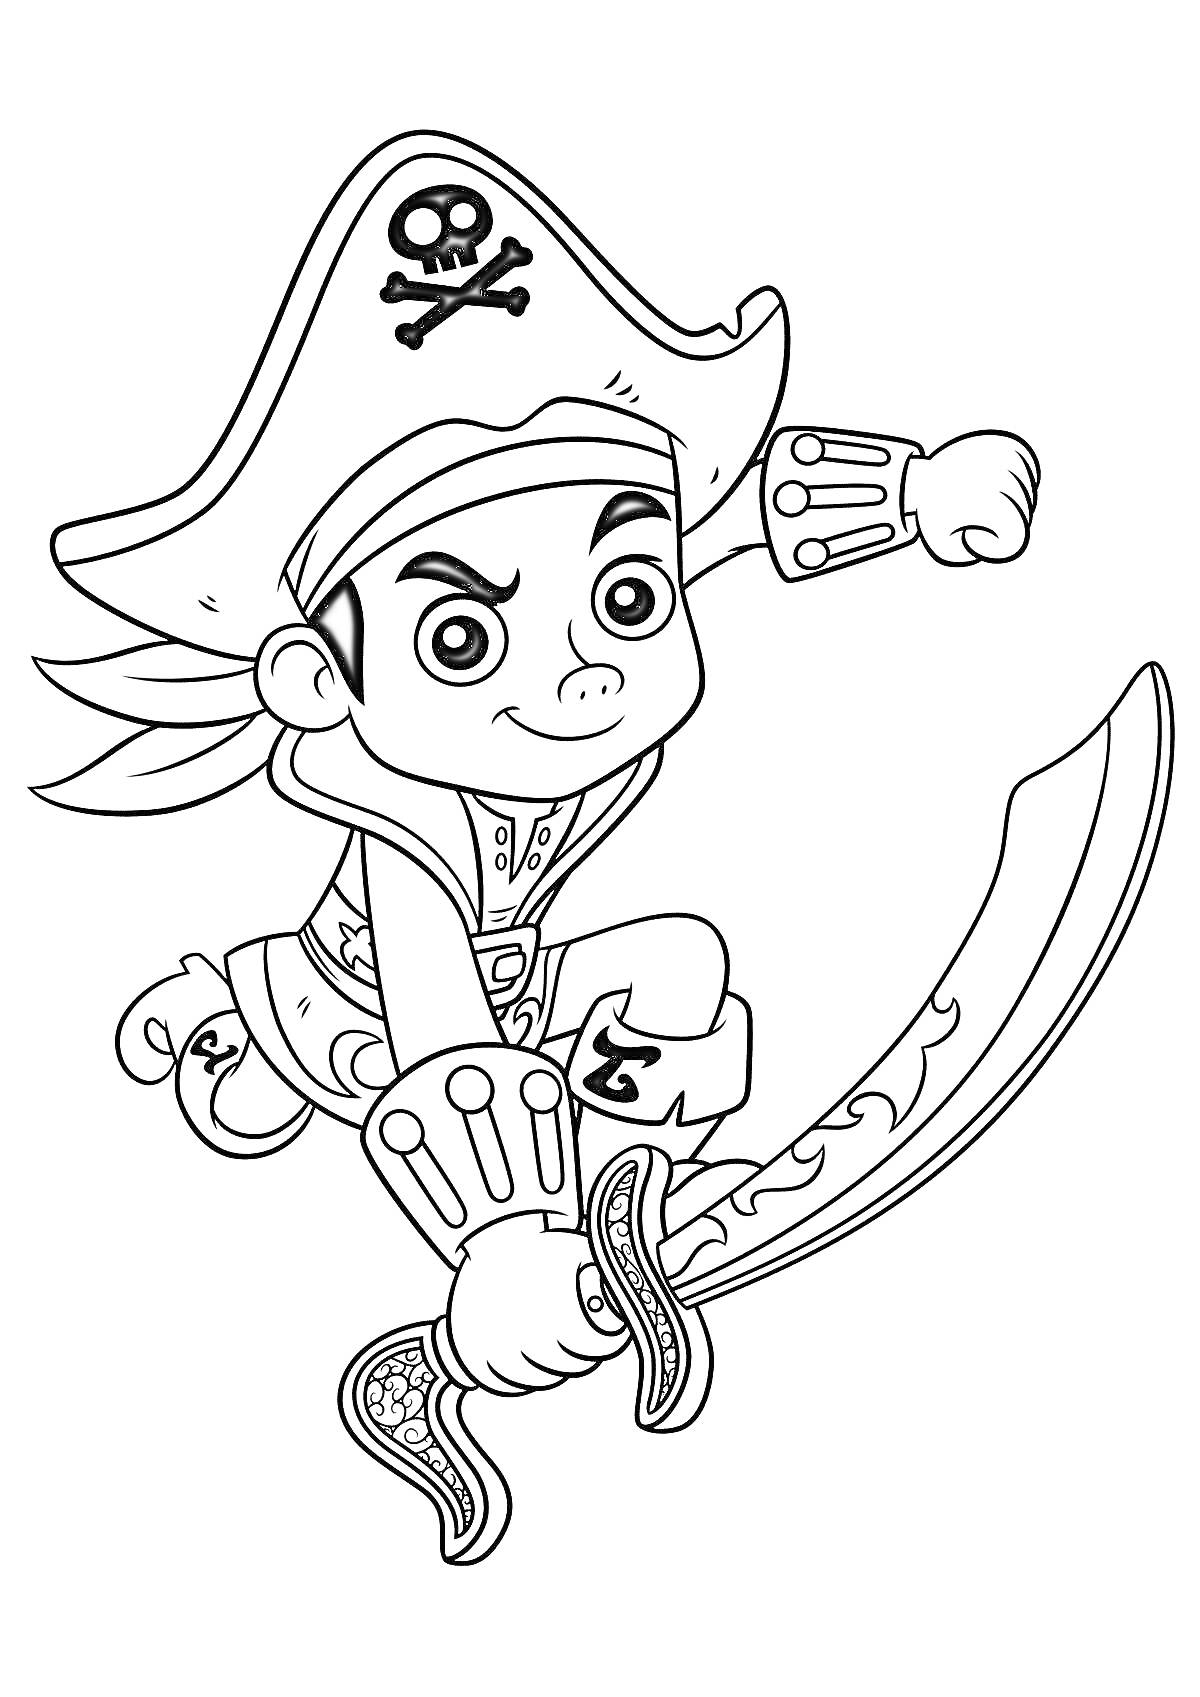 Раскраска Пират в большом шляпе с черепом и костями, держащий изогнутую саблю и готовящийся к прыжку